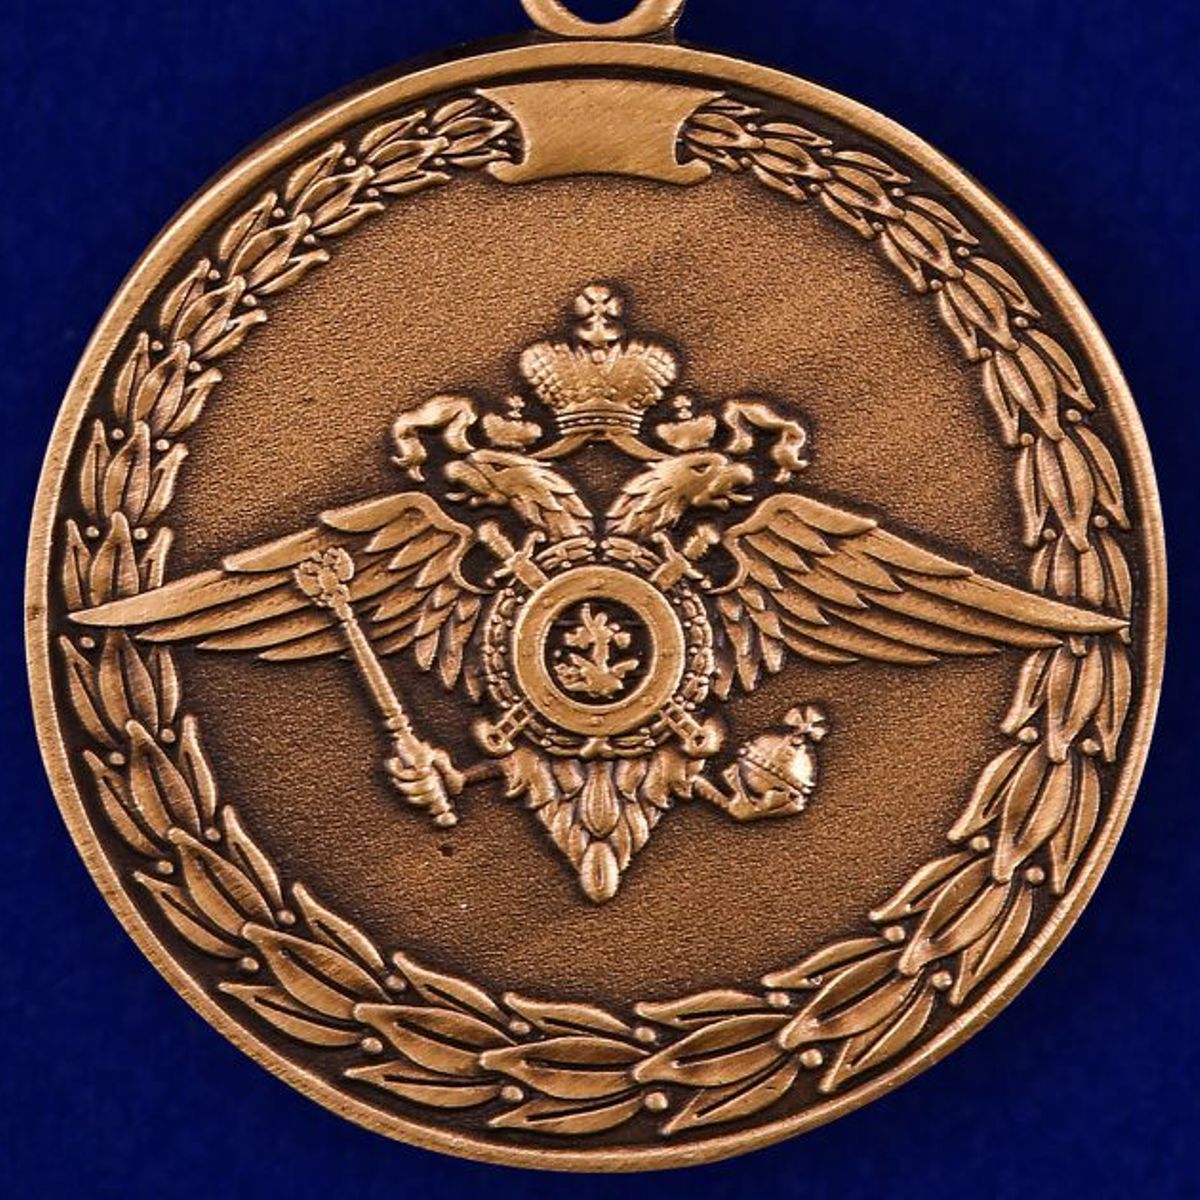 Медаль "За доблесть в службе МВД" 